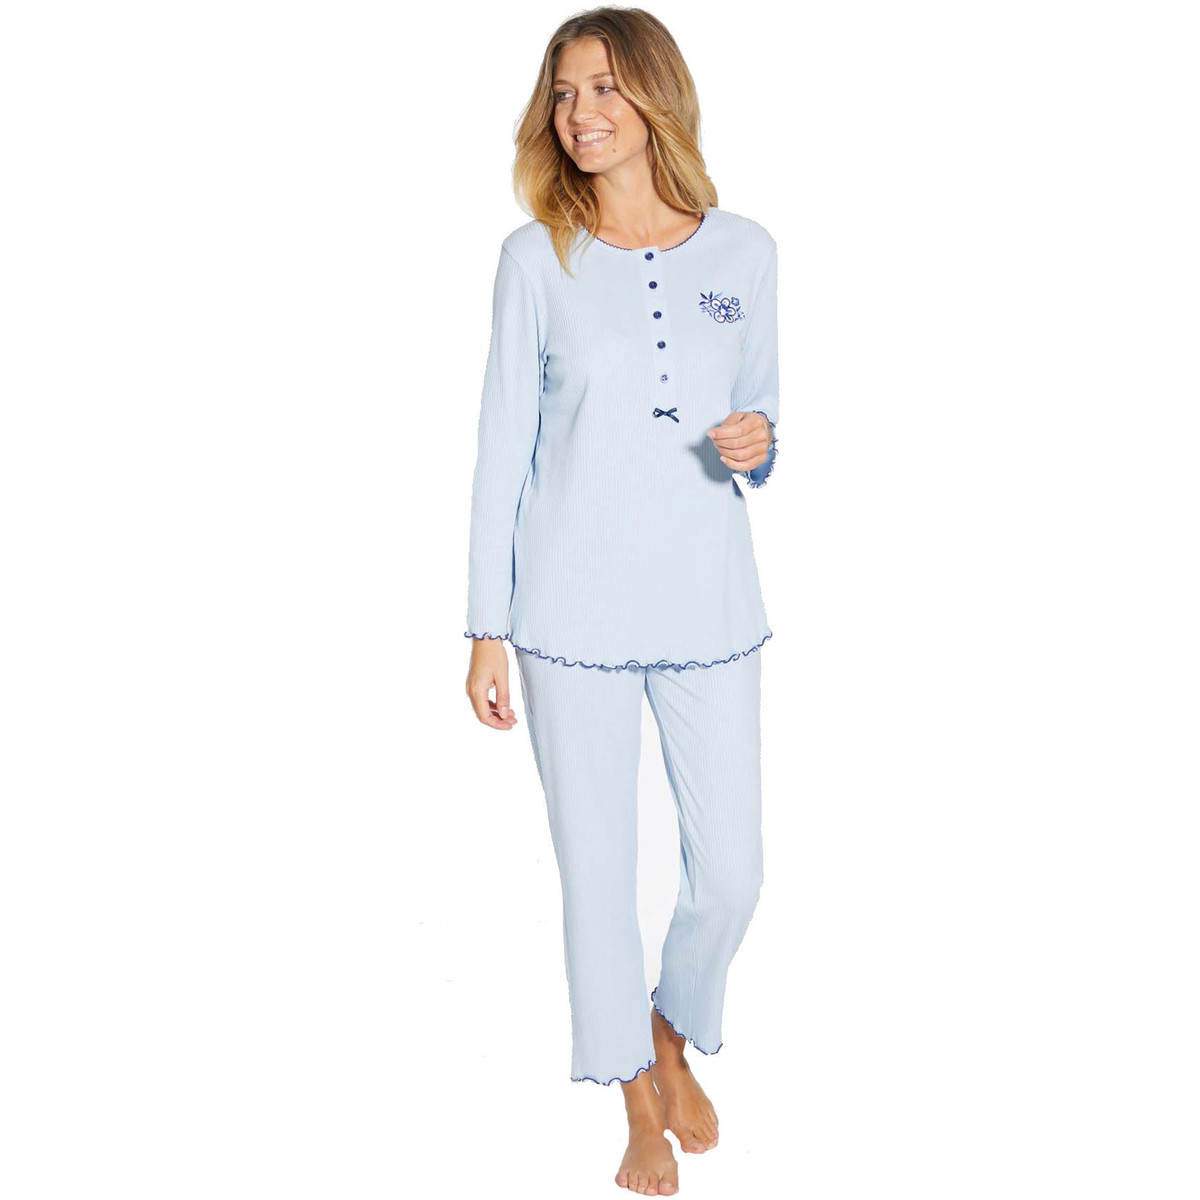 Vêtements Femme Elue par nous by  - Pyjama manches longues coton Bleu